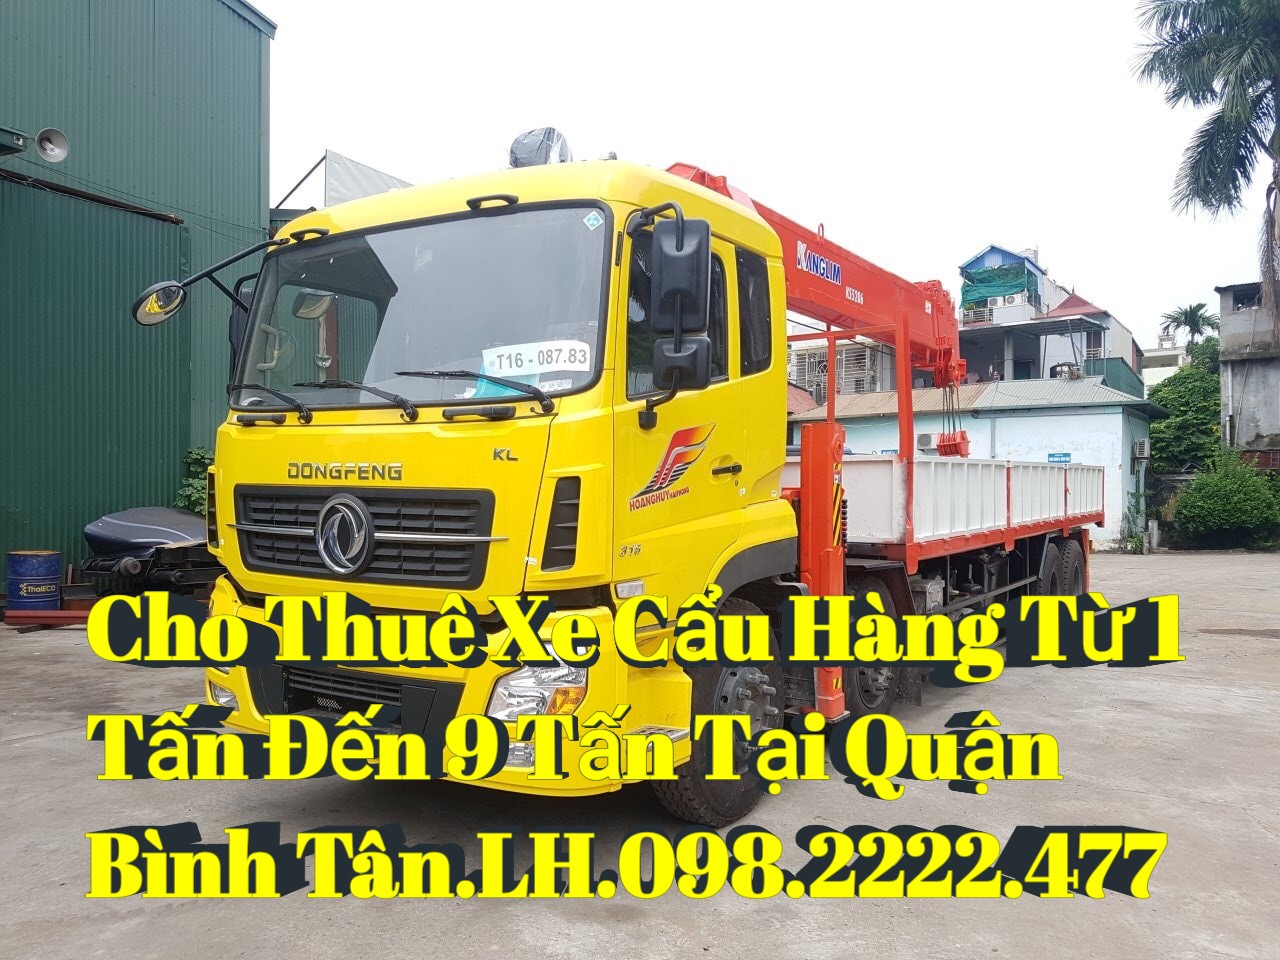 Vận tải  Lâm Sang – công ty vận tải chuyên cung cấp dịch vụ cho thuê xe tải chở hàng từ 1 tấn 2 tấn 5 tấn đến 9 tấn  tại quận Bình Tân.